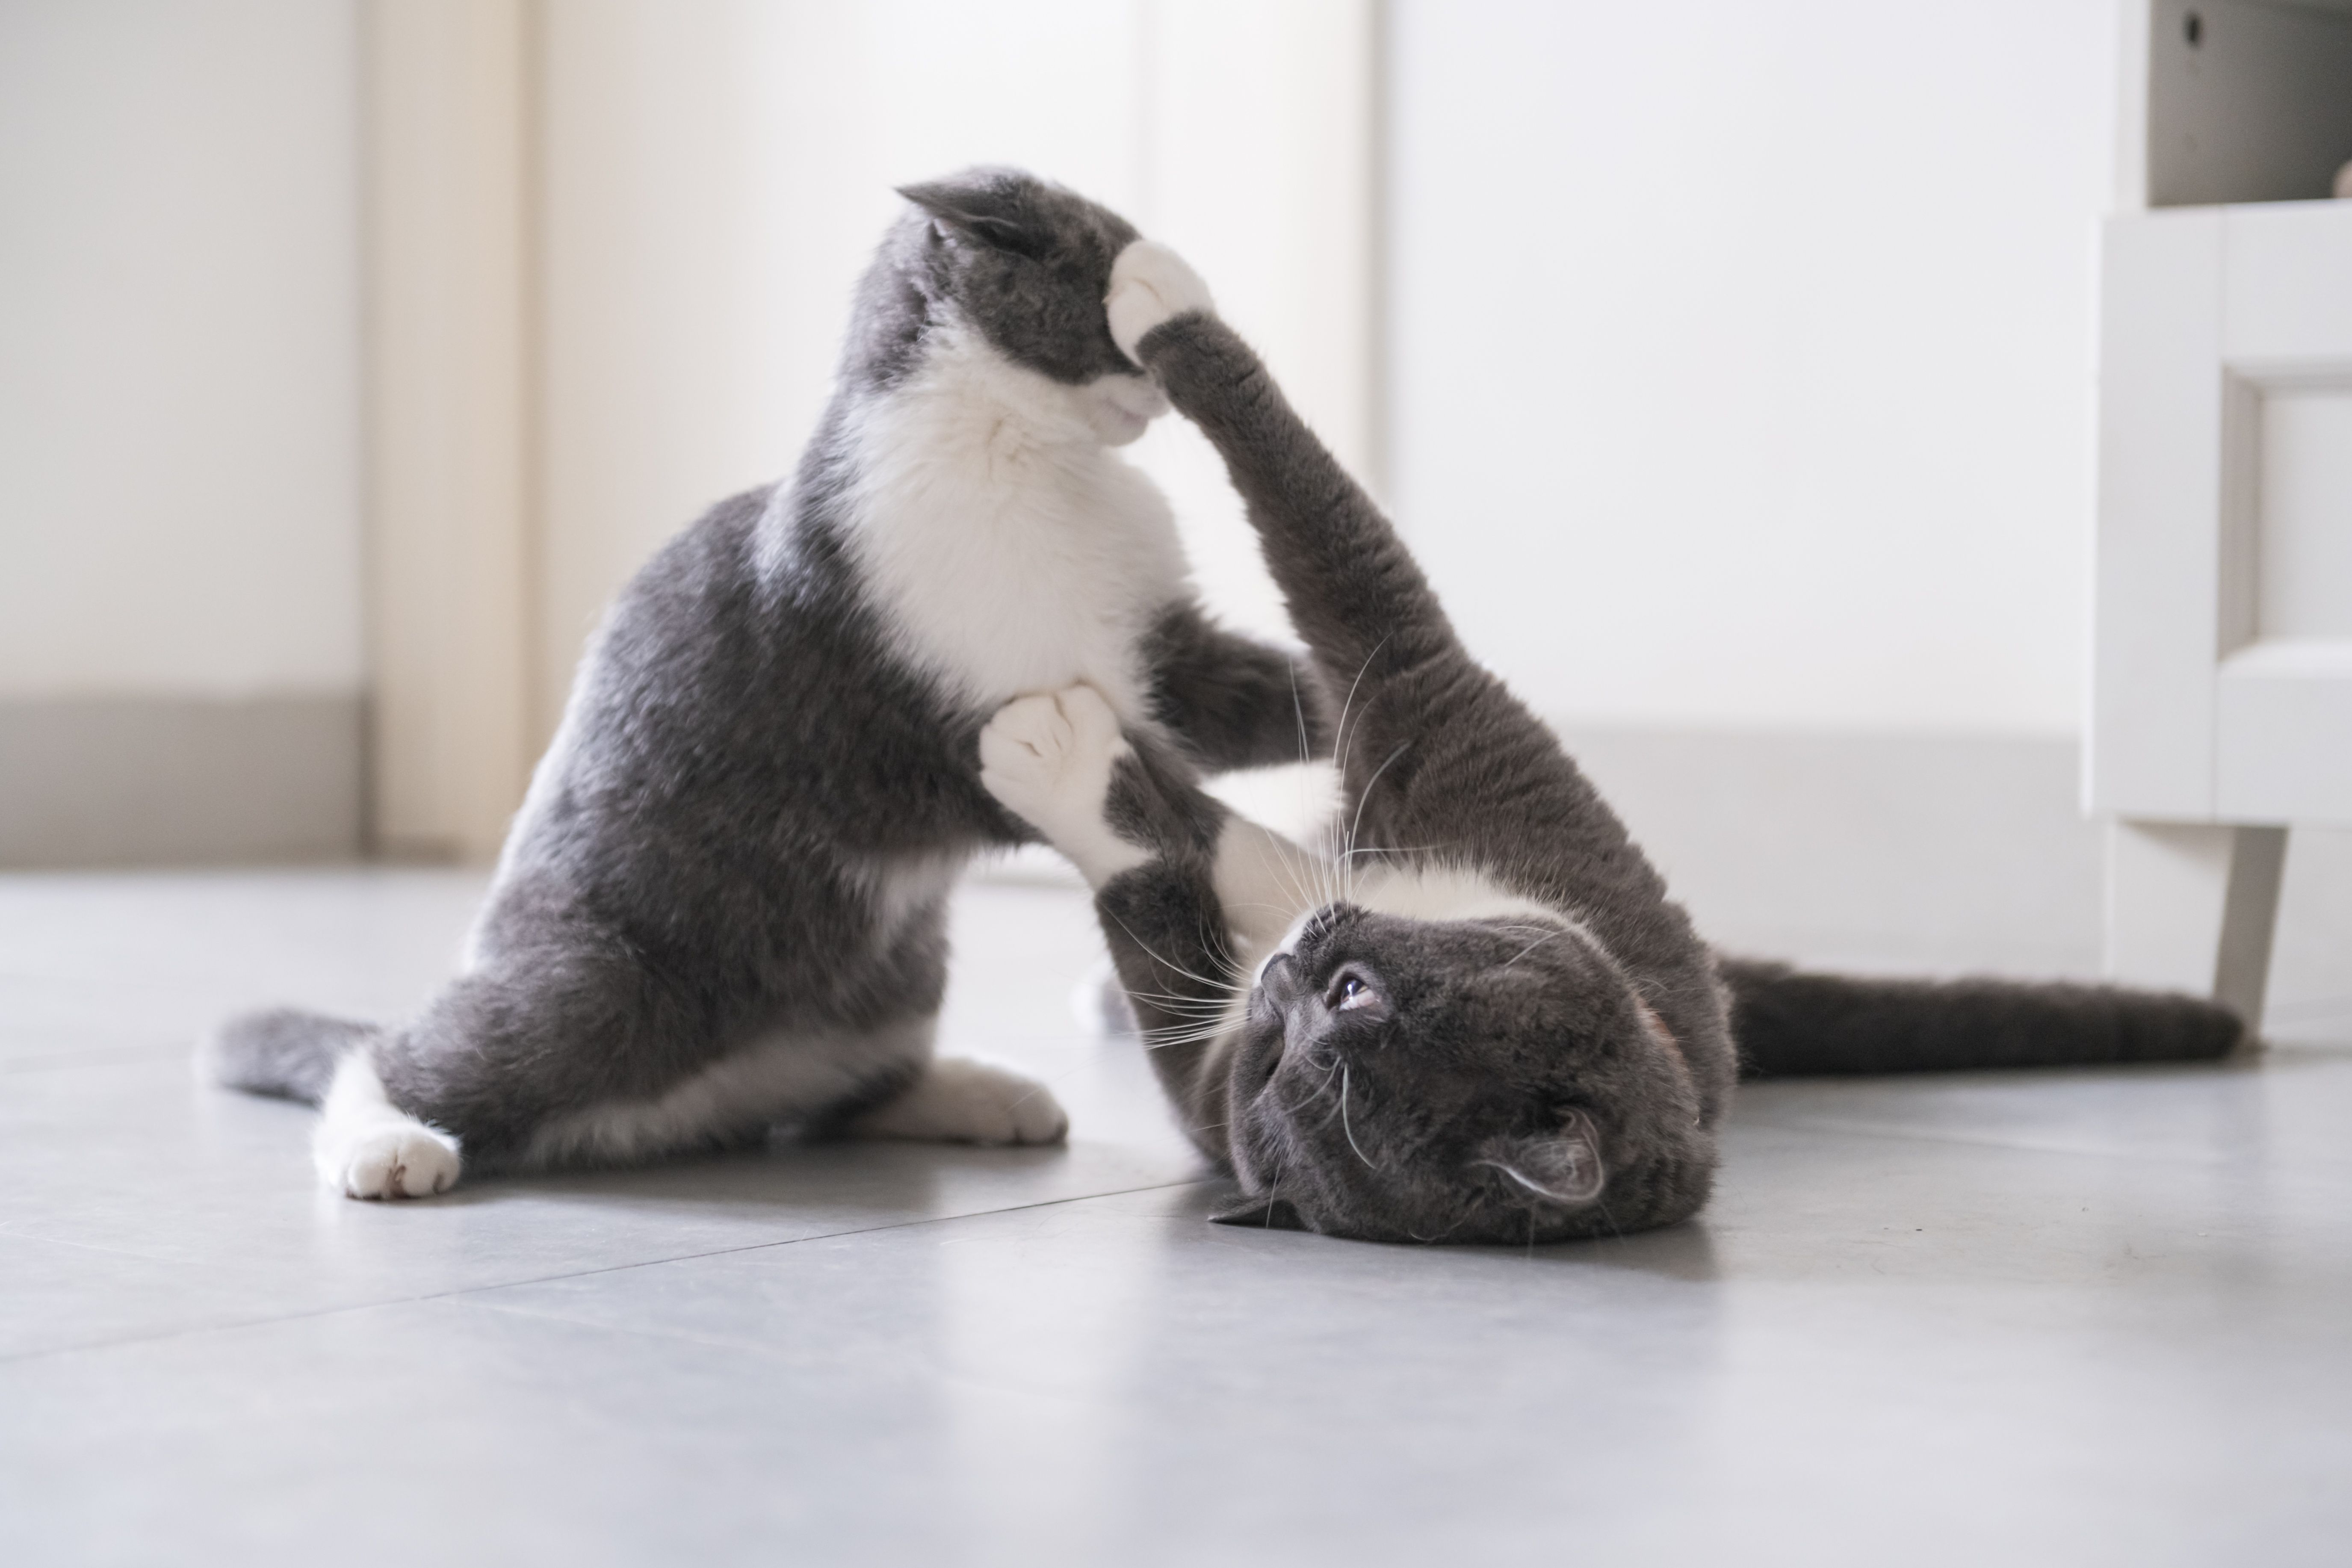 due gatti giocano alla lotta